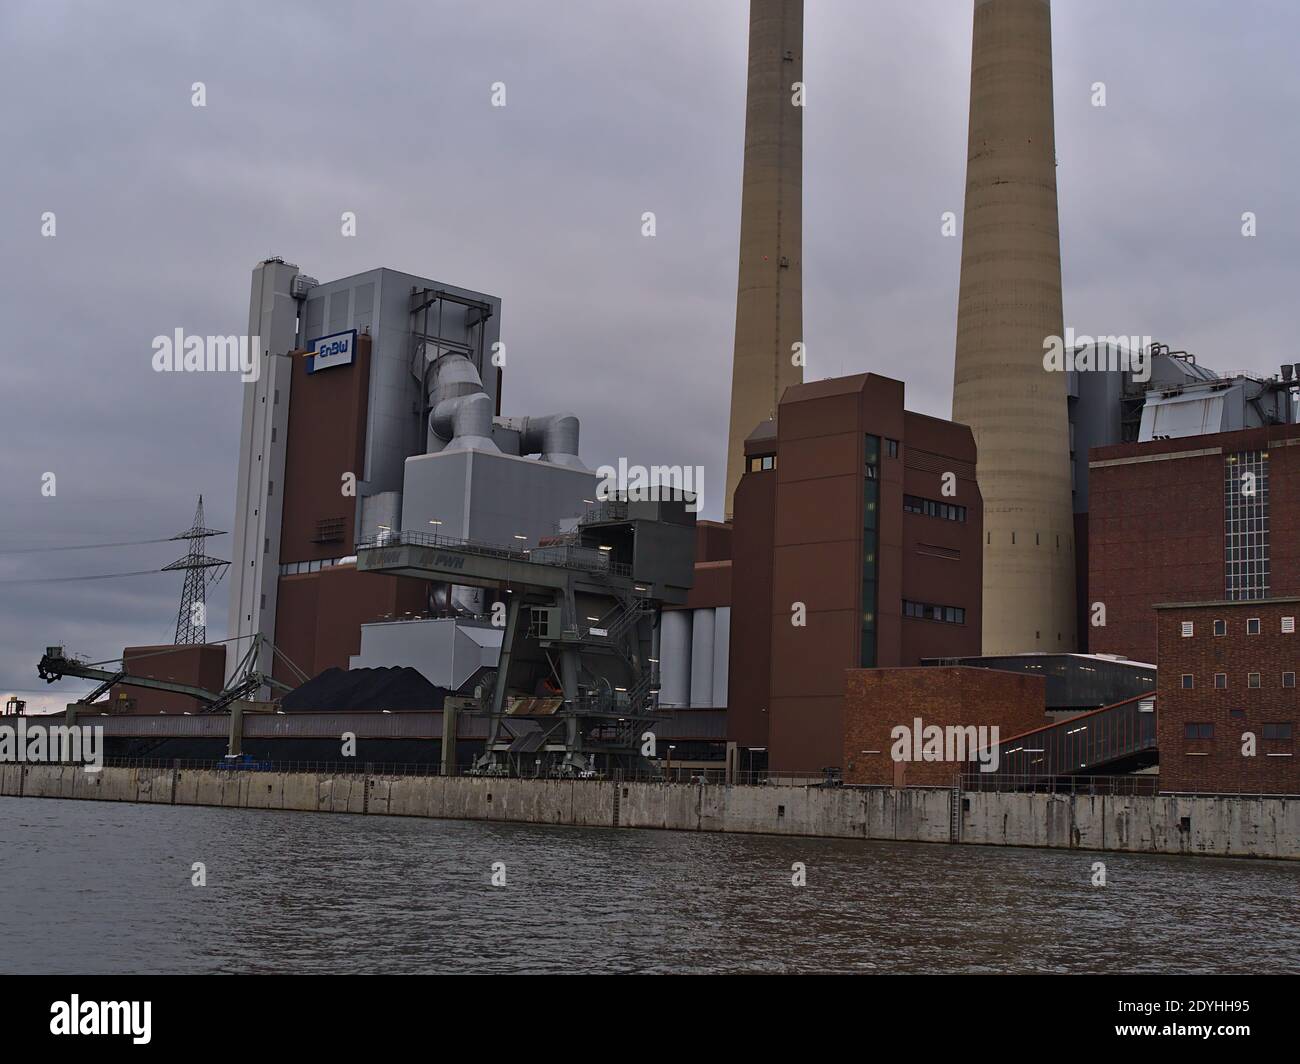 Vue de la centrale électrique Heilbronn au charbon exploitée par Energie Baden-Württemberg (ENBW) avec tas de charbon et grue portuaire sur la rive du fleuve Neckar. Banque D'Images